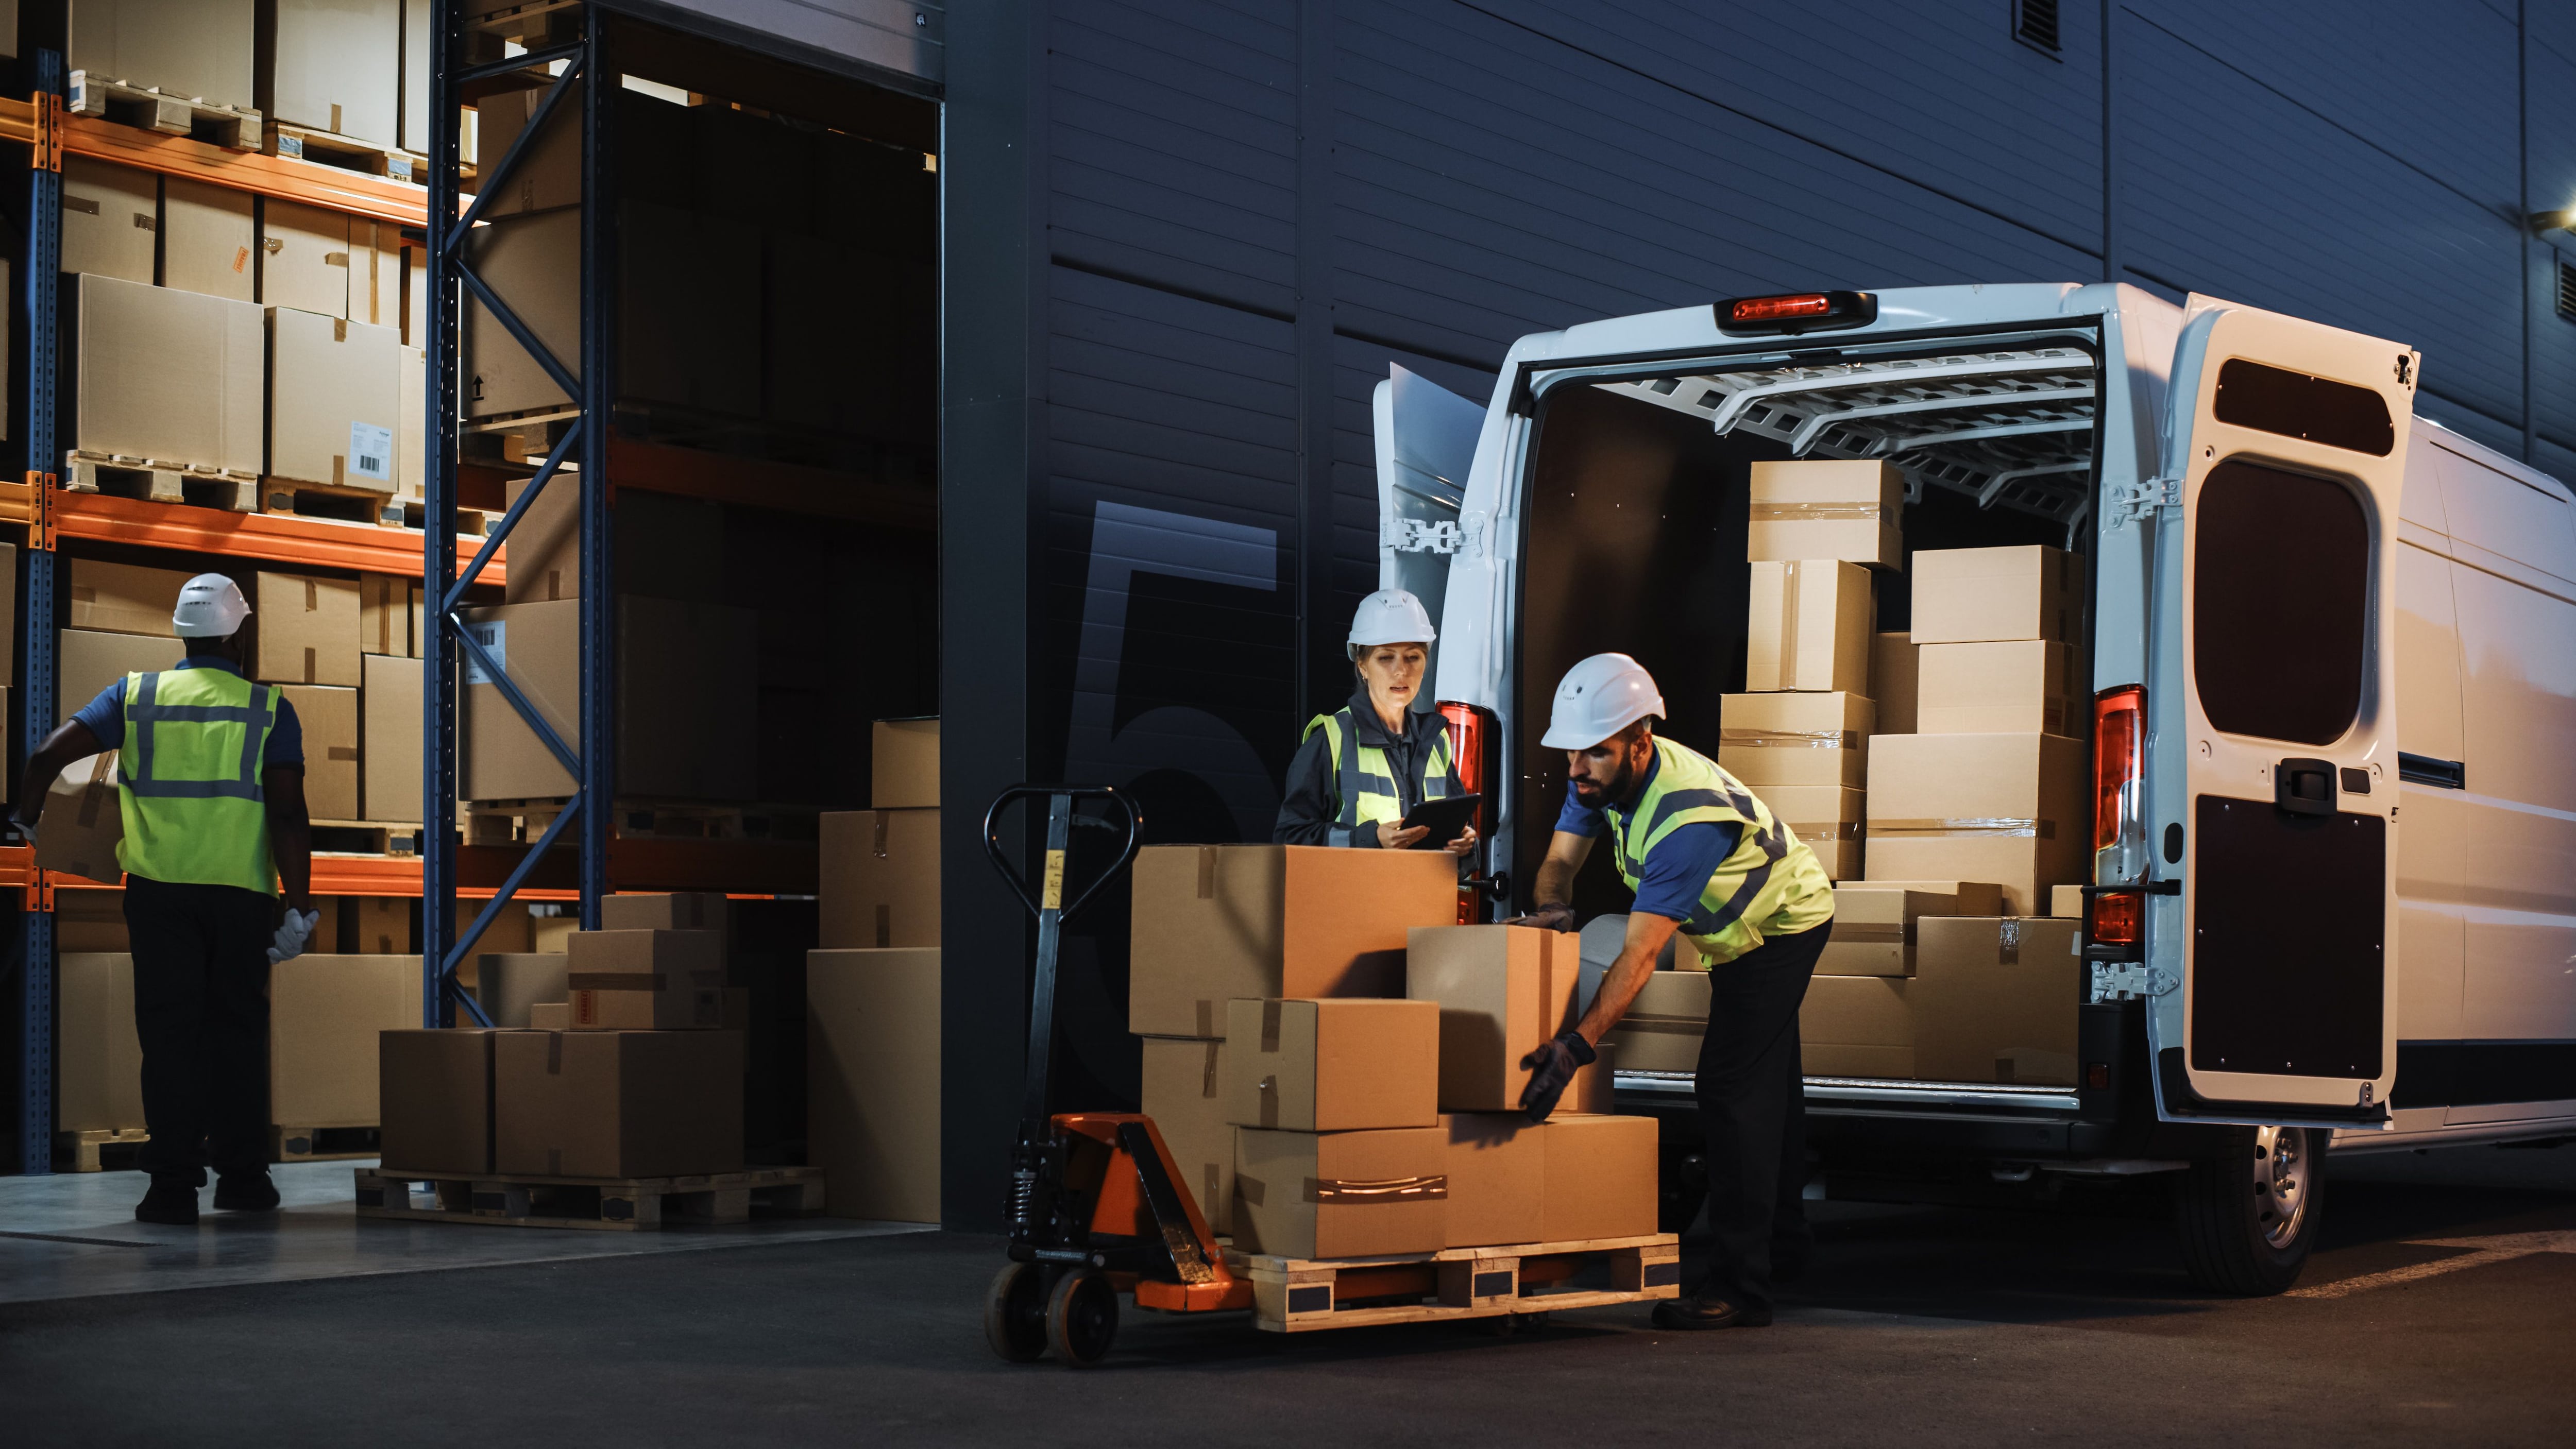 Trabajadores de almacén descargan un camión en la noche (Shutterstock)